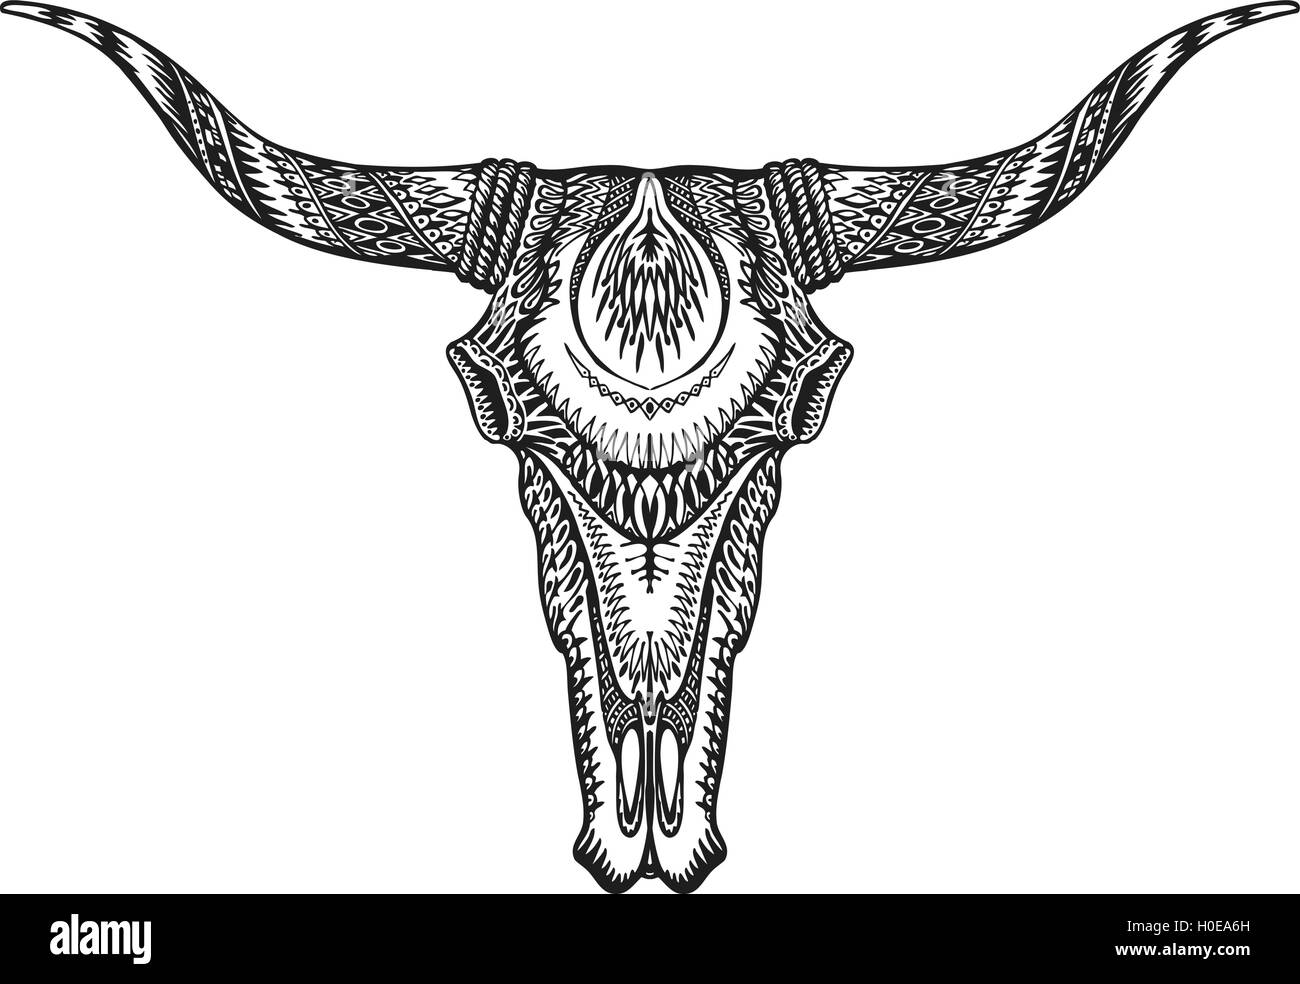 Dekorative indische Bull Schädel. Hand gezeichnet Vektor-illustration Stock Vektor